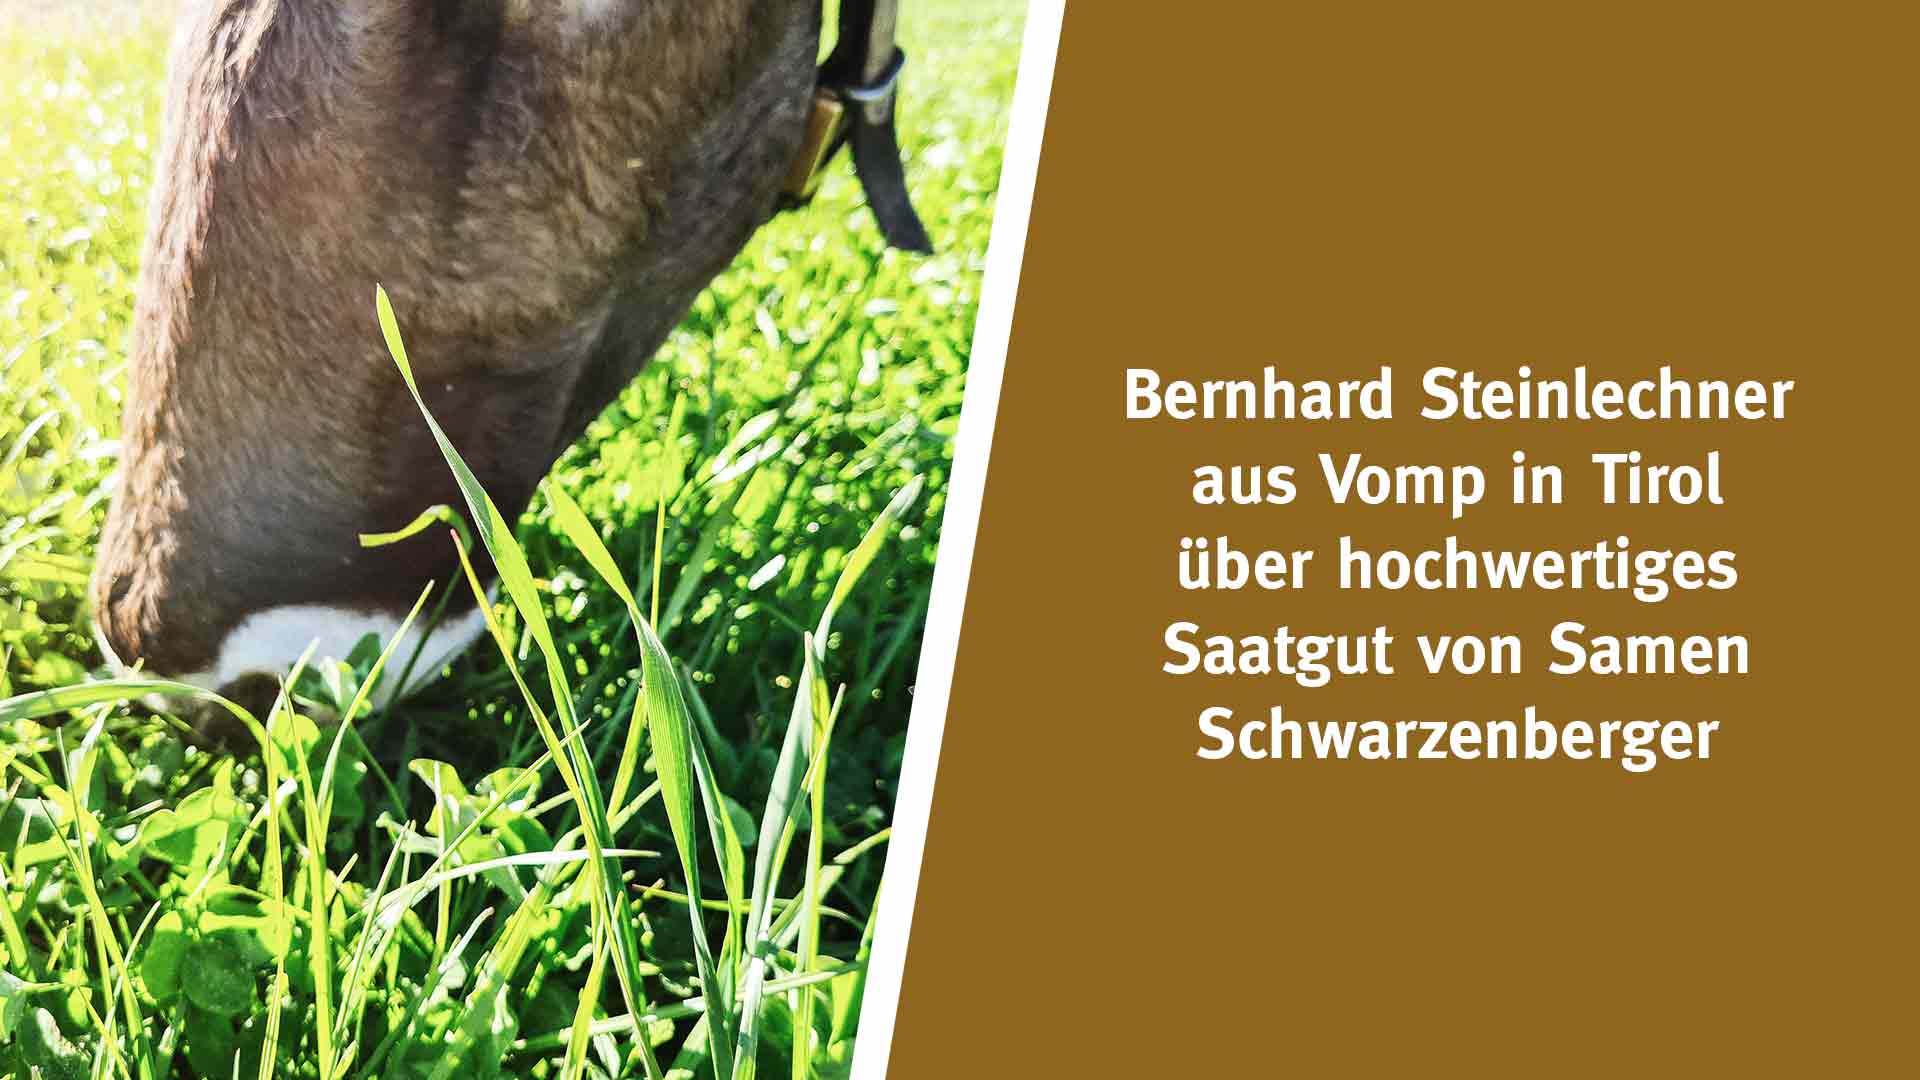 Bernhard Steinlechner aus Vomp in Tirol über hochwertiges Saatgut von Samen Schwarzenberger